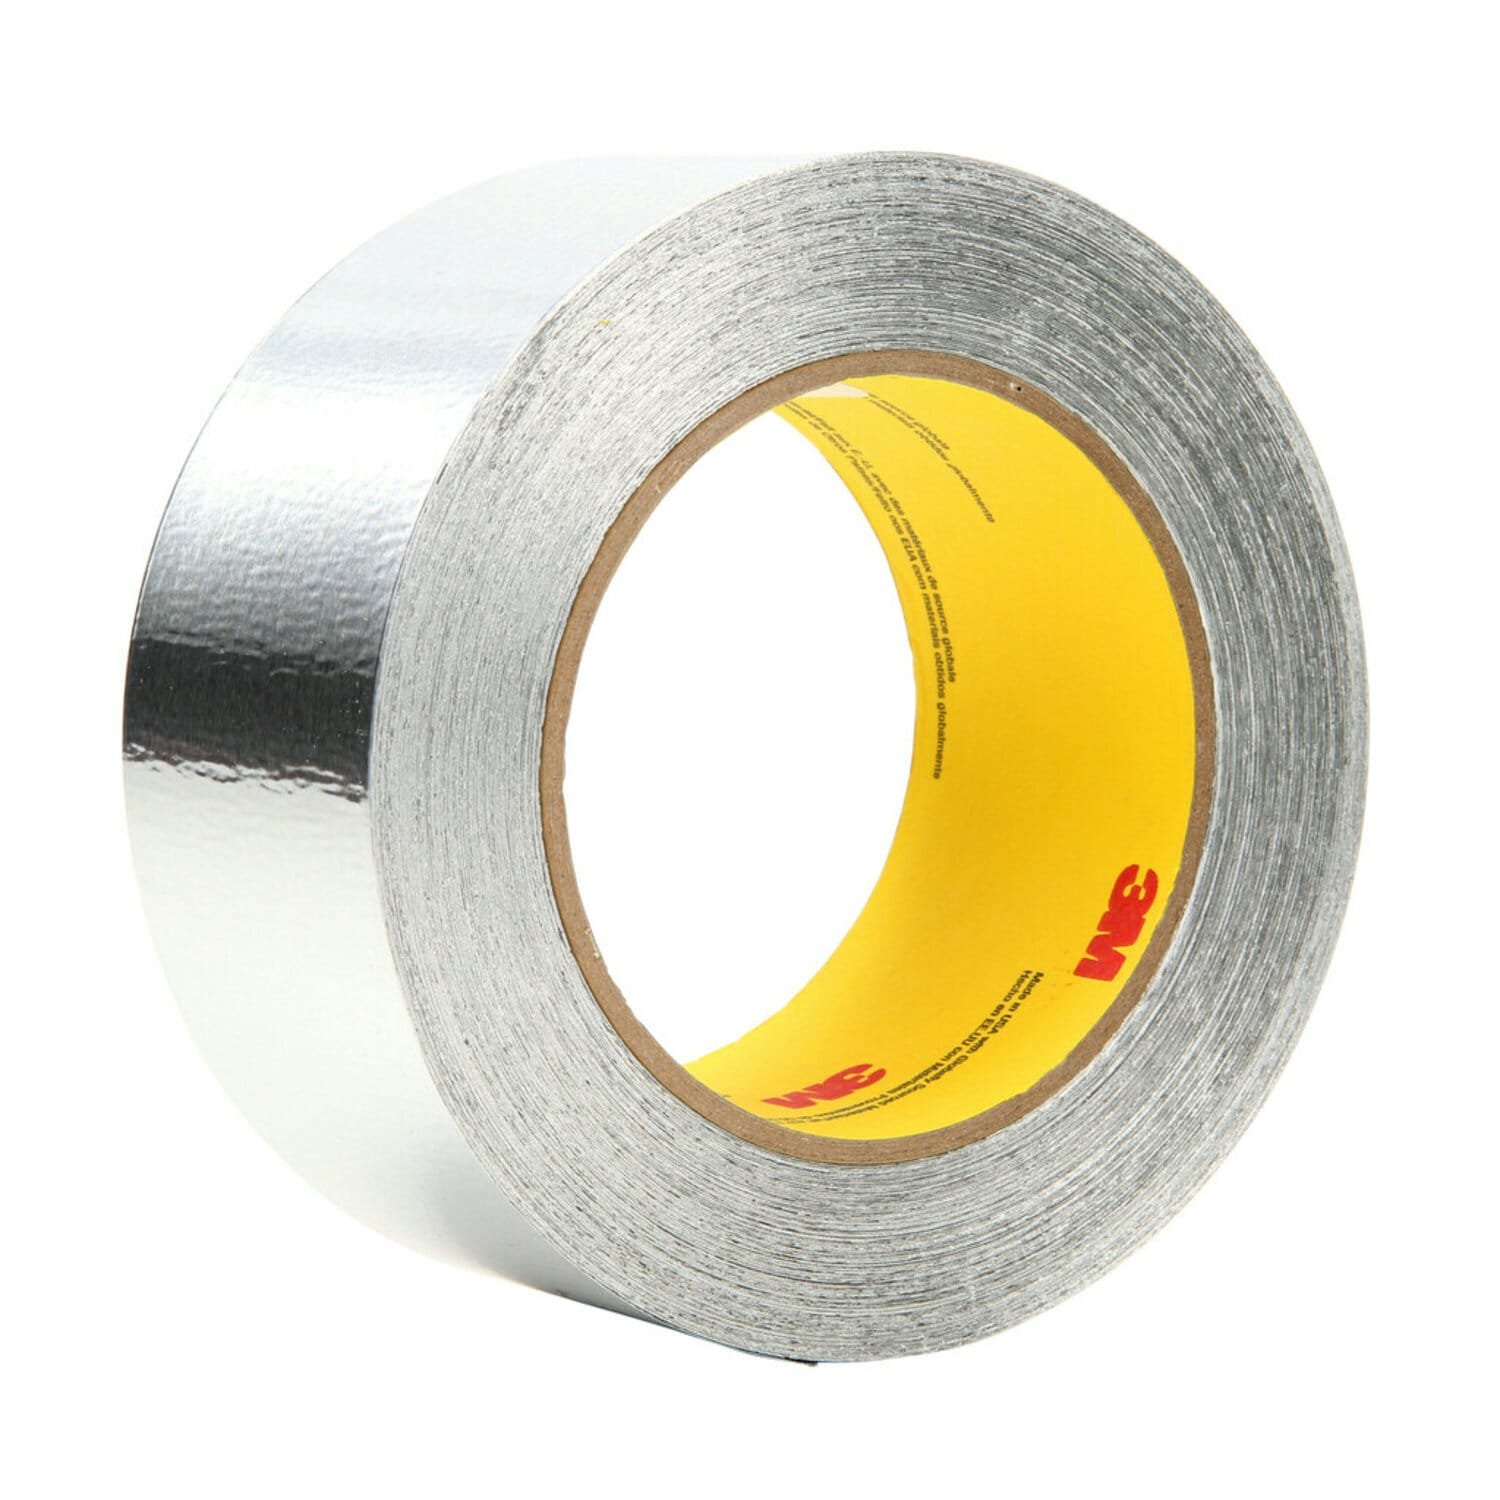 7100089245 - 3M Aluminum Foil Tape 425 LT80, Silver, 2 in x 60 yd, 4.6 mil, 24 rolls
per case bulk